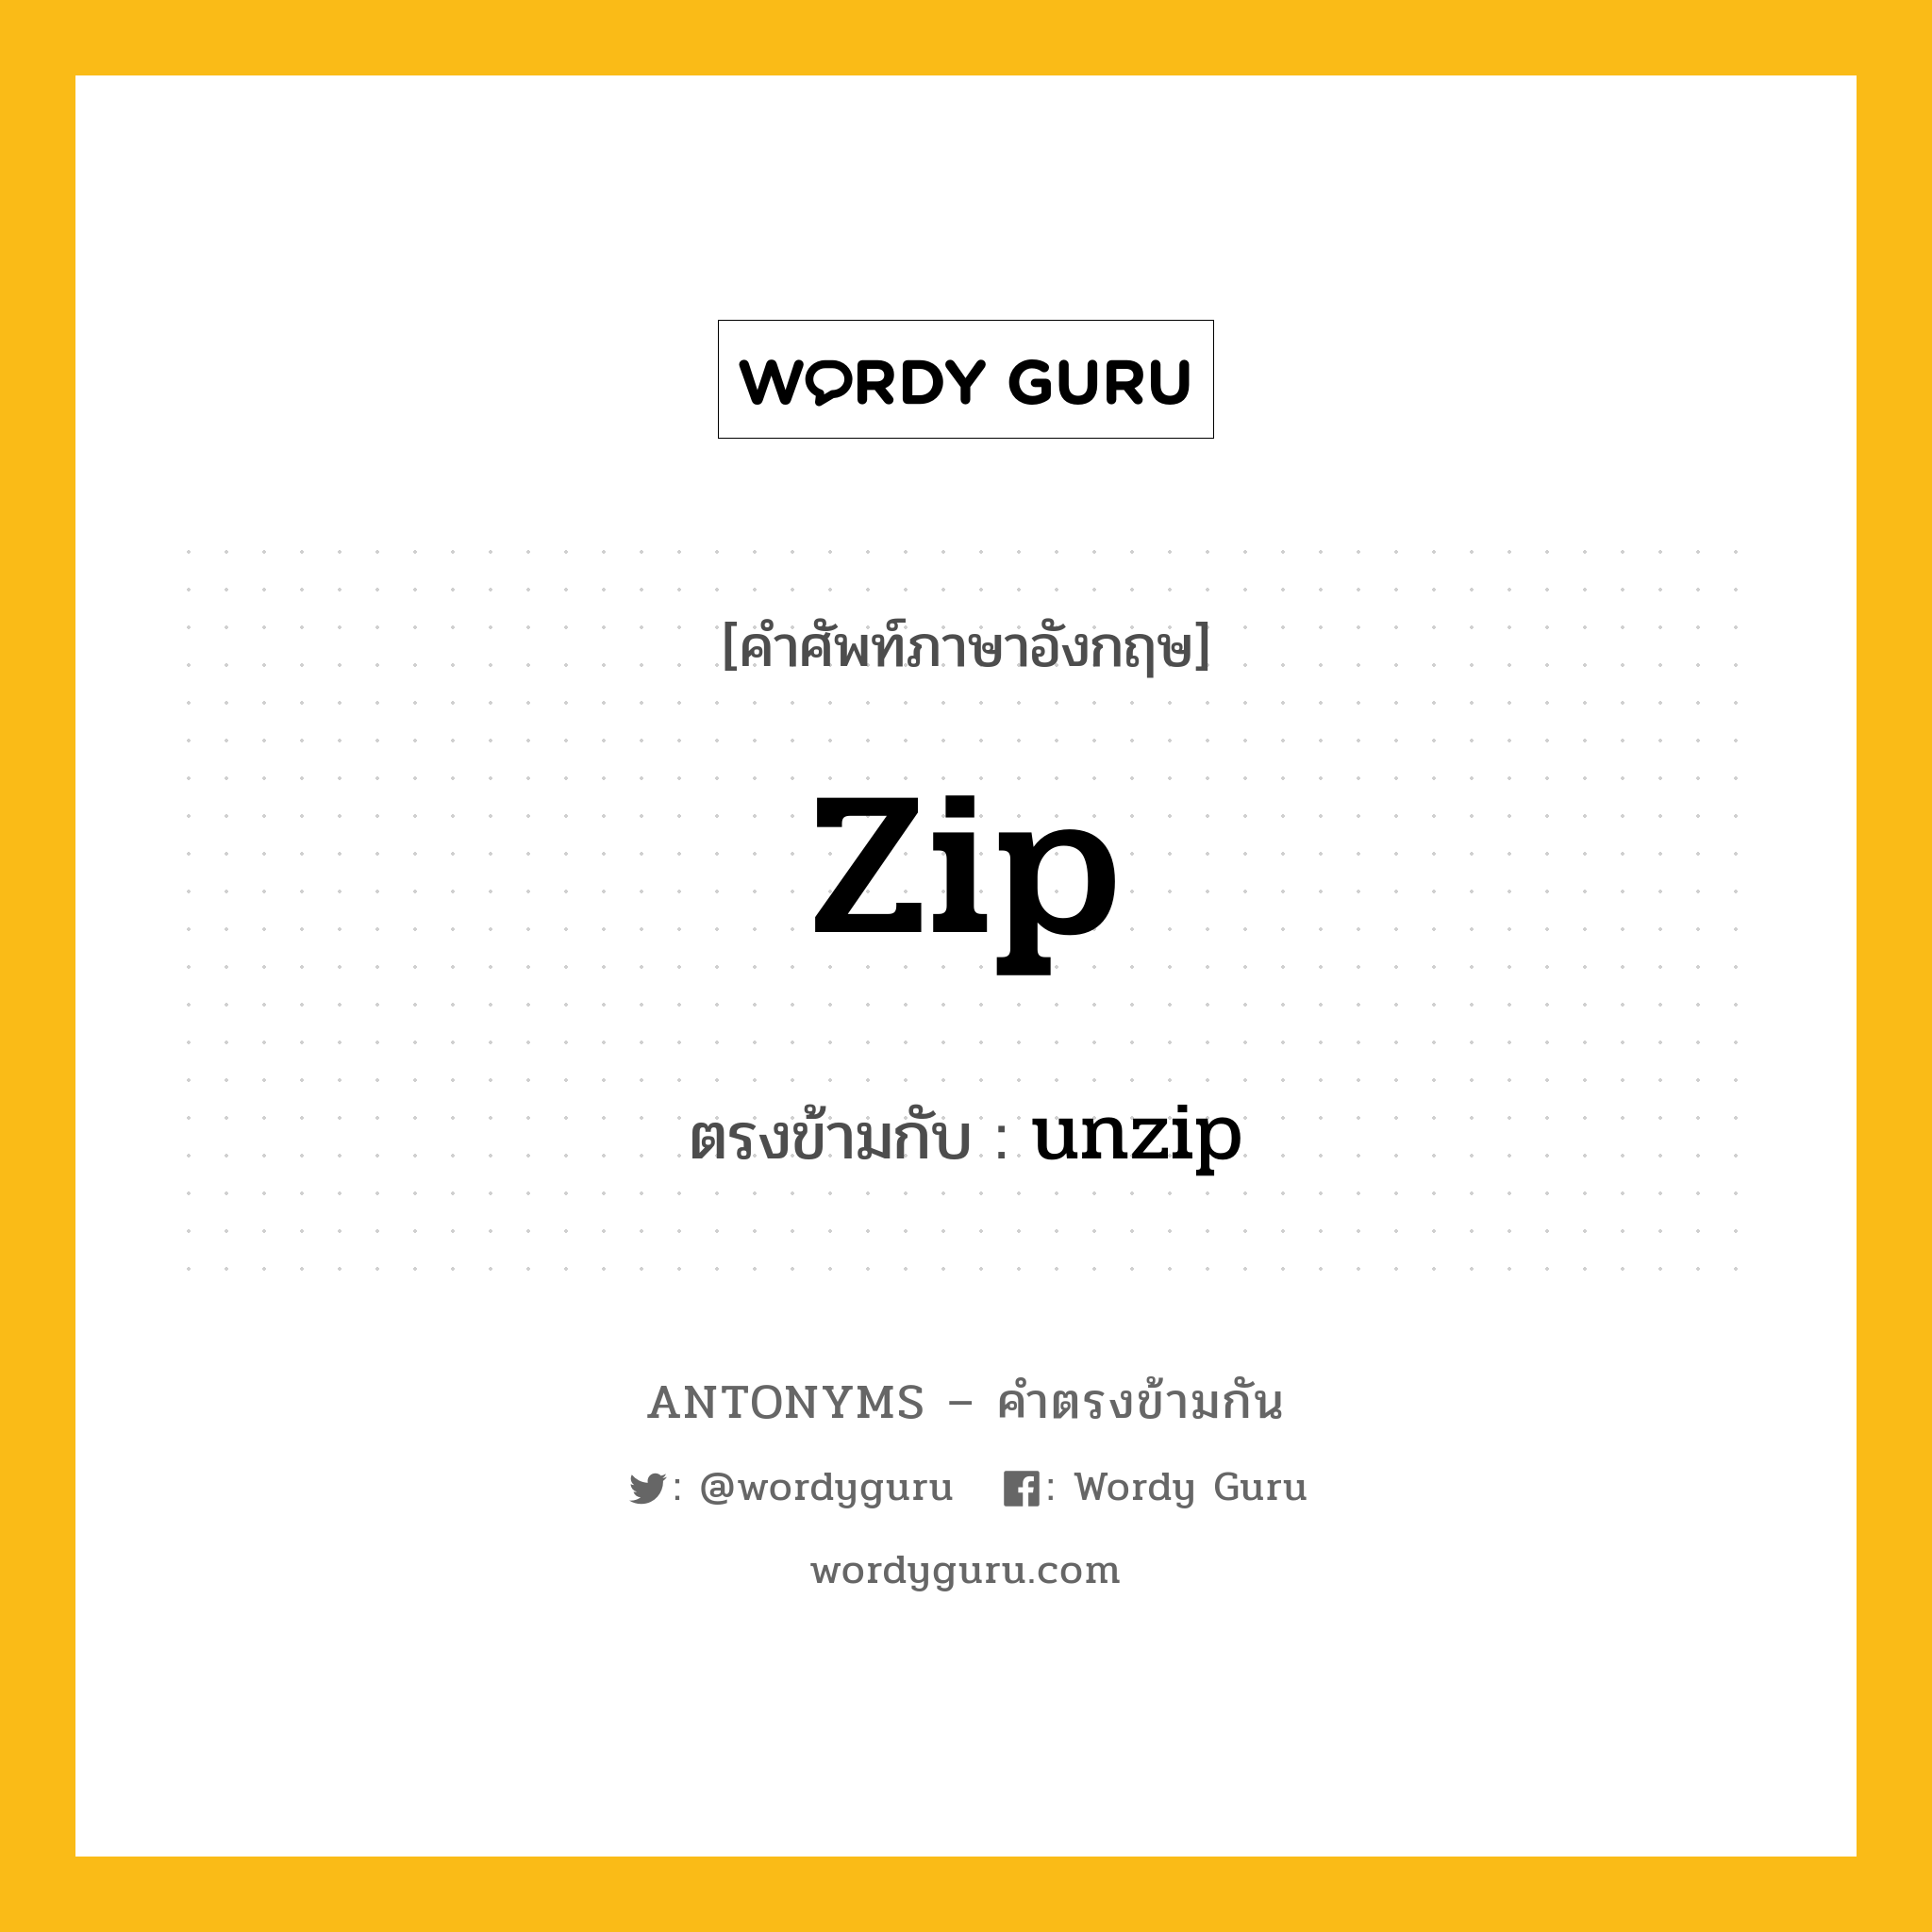 zip เป็นคำตรงข้ามกับคำไหนบ้าง?, คำศัพท์ภาษาอังกฤษ zip ตรงข้ามกับ unzip หมวด unzip